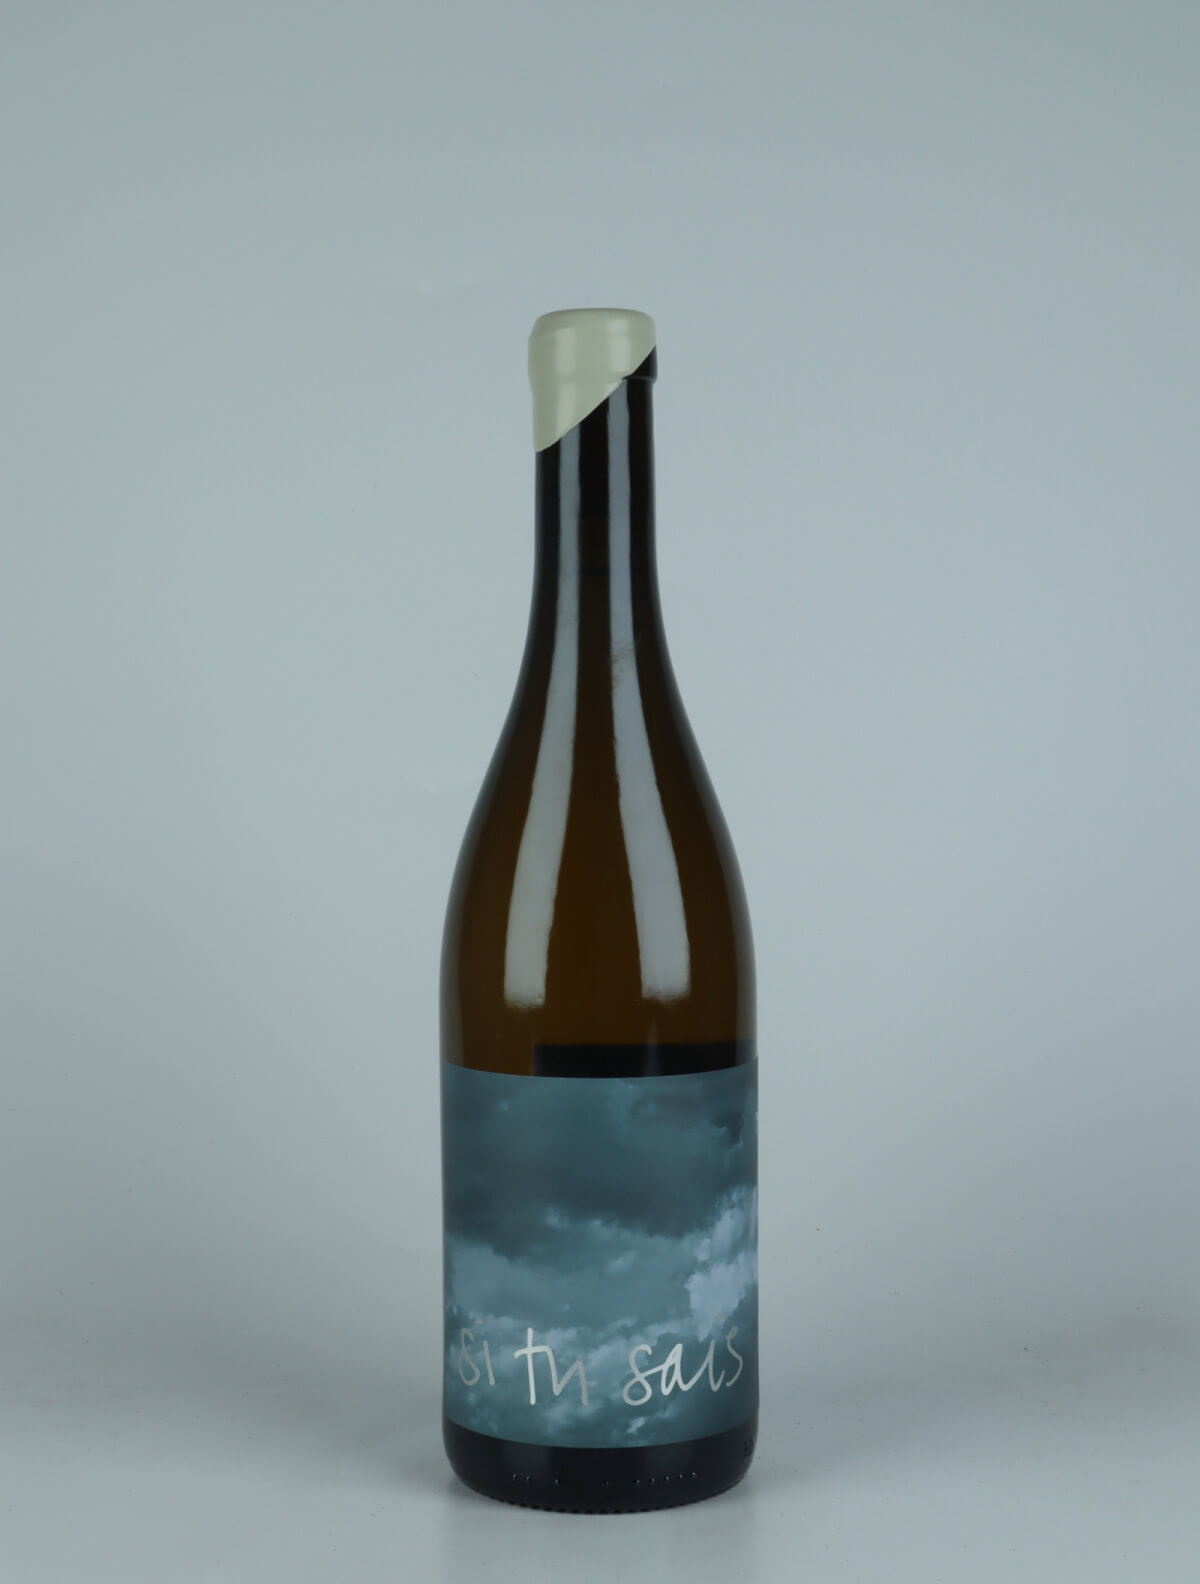 En flaske 2022 Pernand-Vergelesses - Les Belles Filles Hvidvin fra Si Tu Sais, Bourgogne i Frankrig